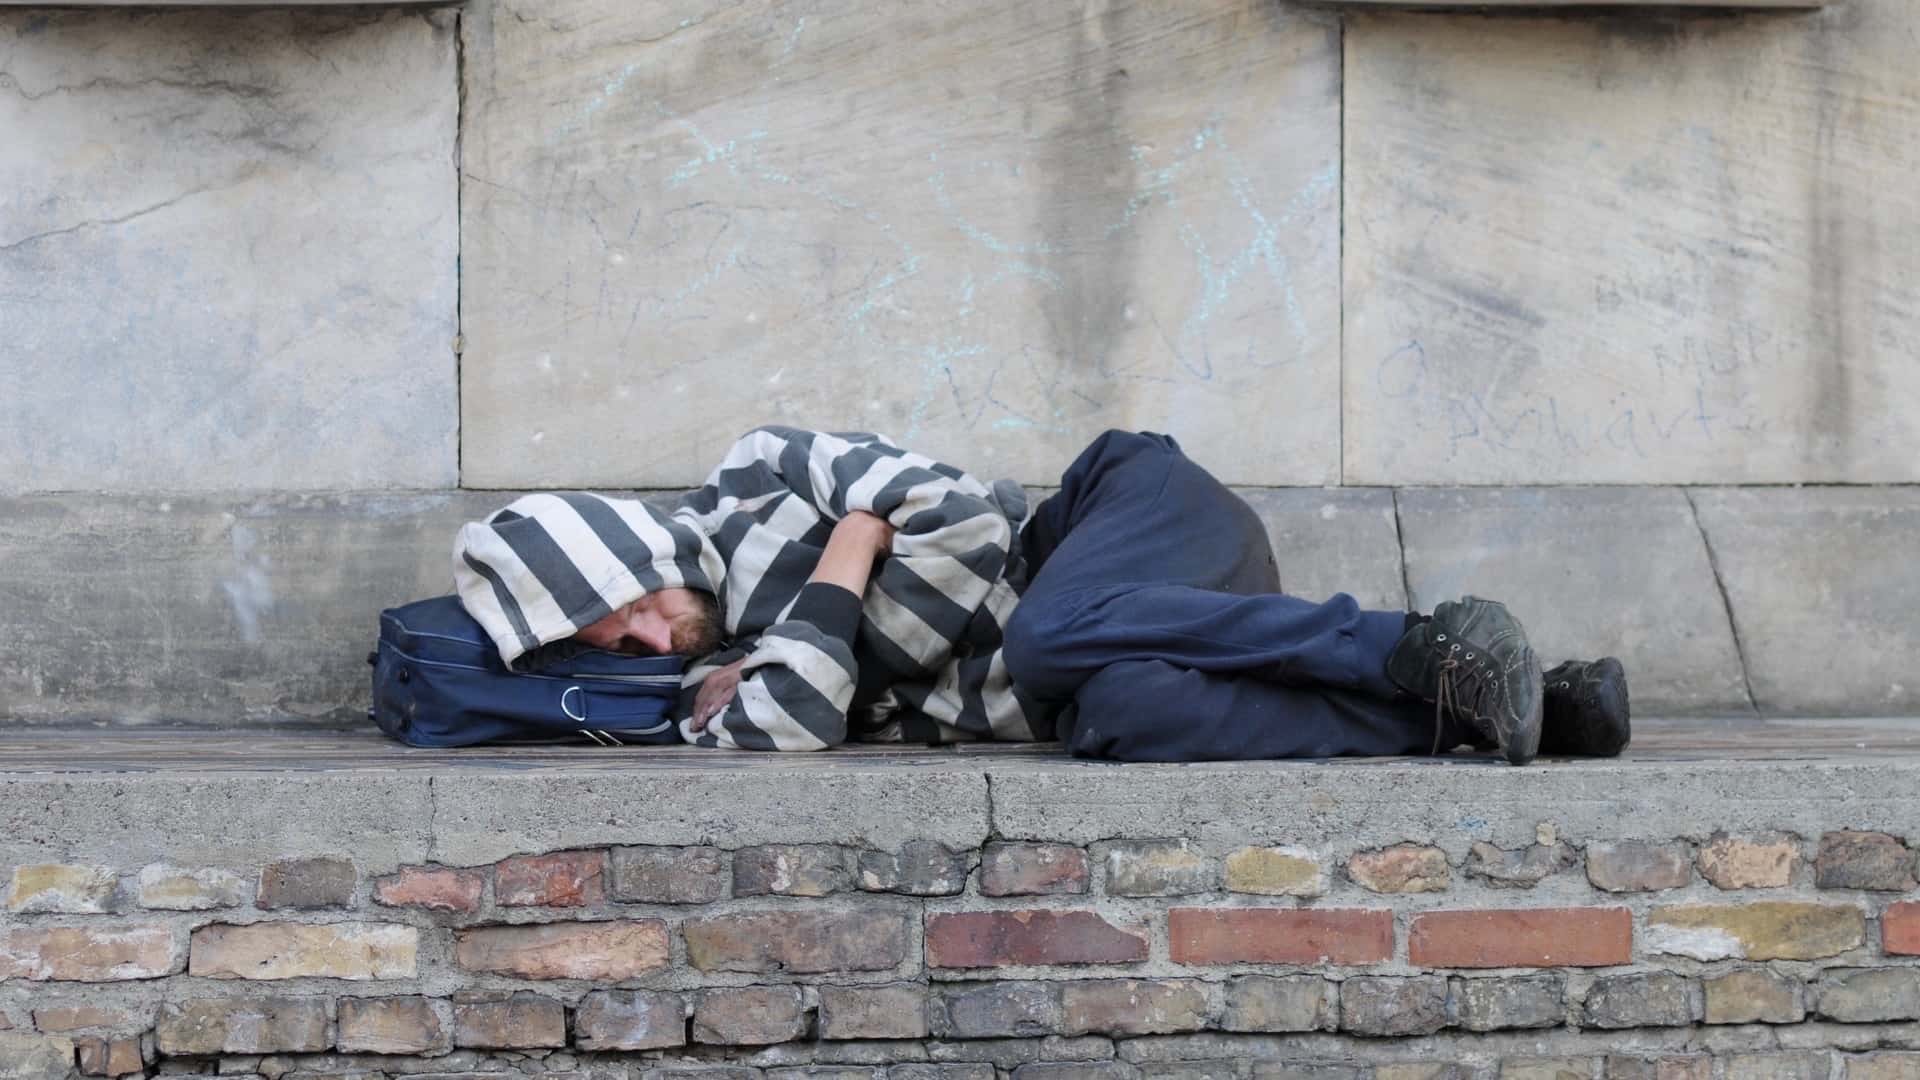 Homeless man sleeping outside